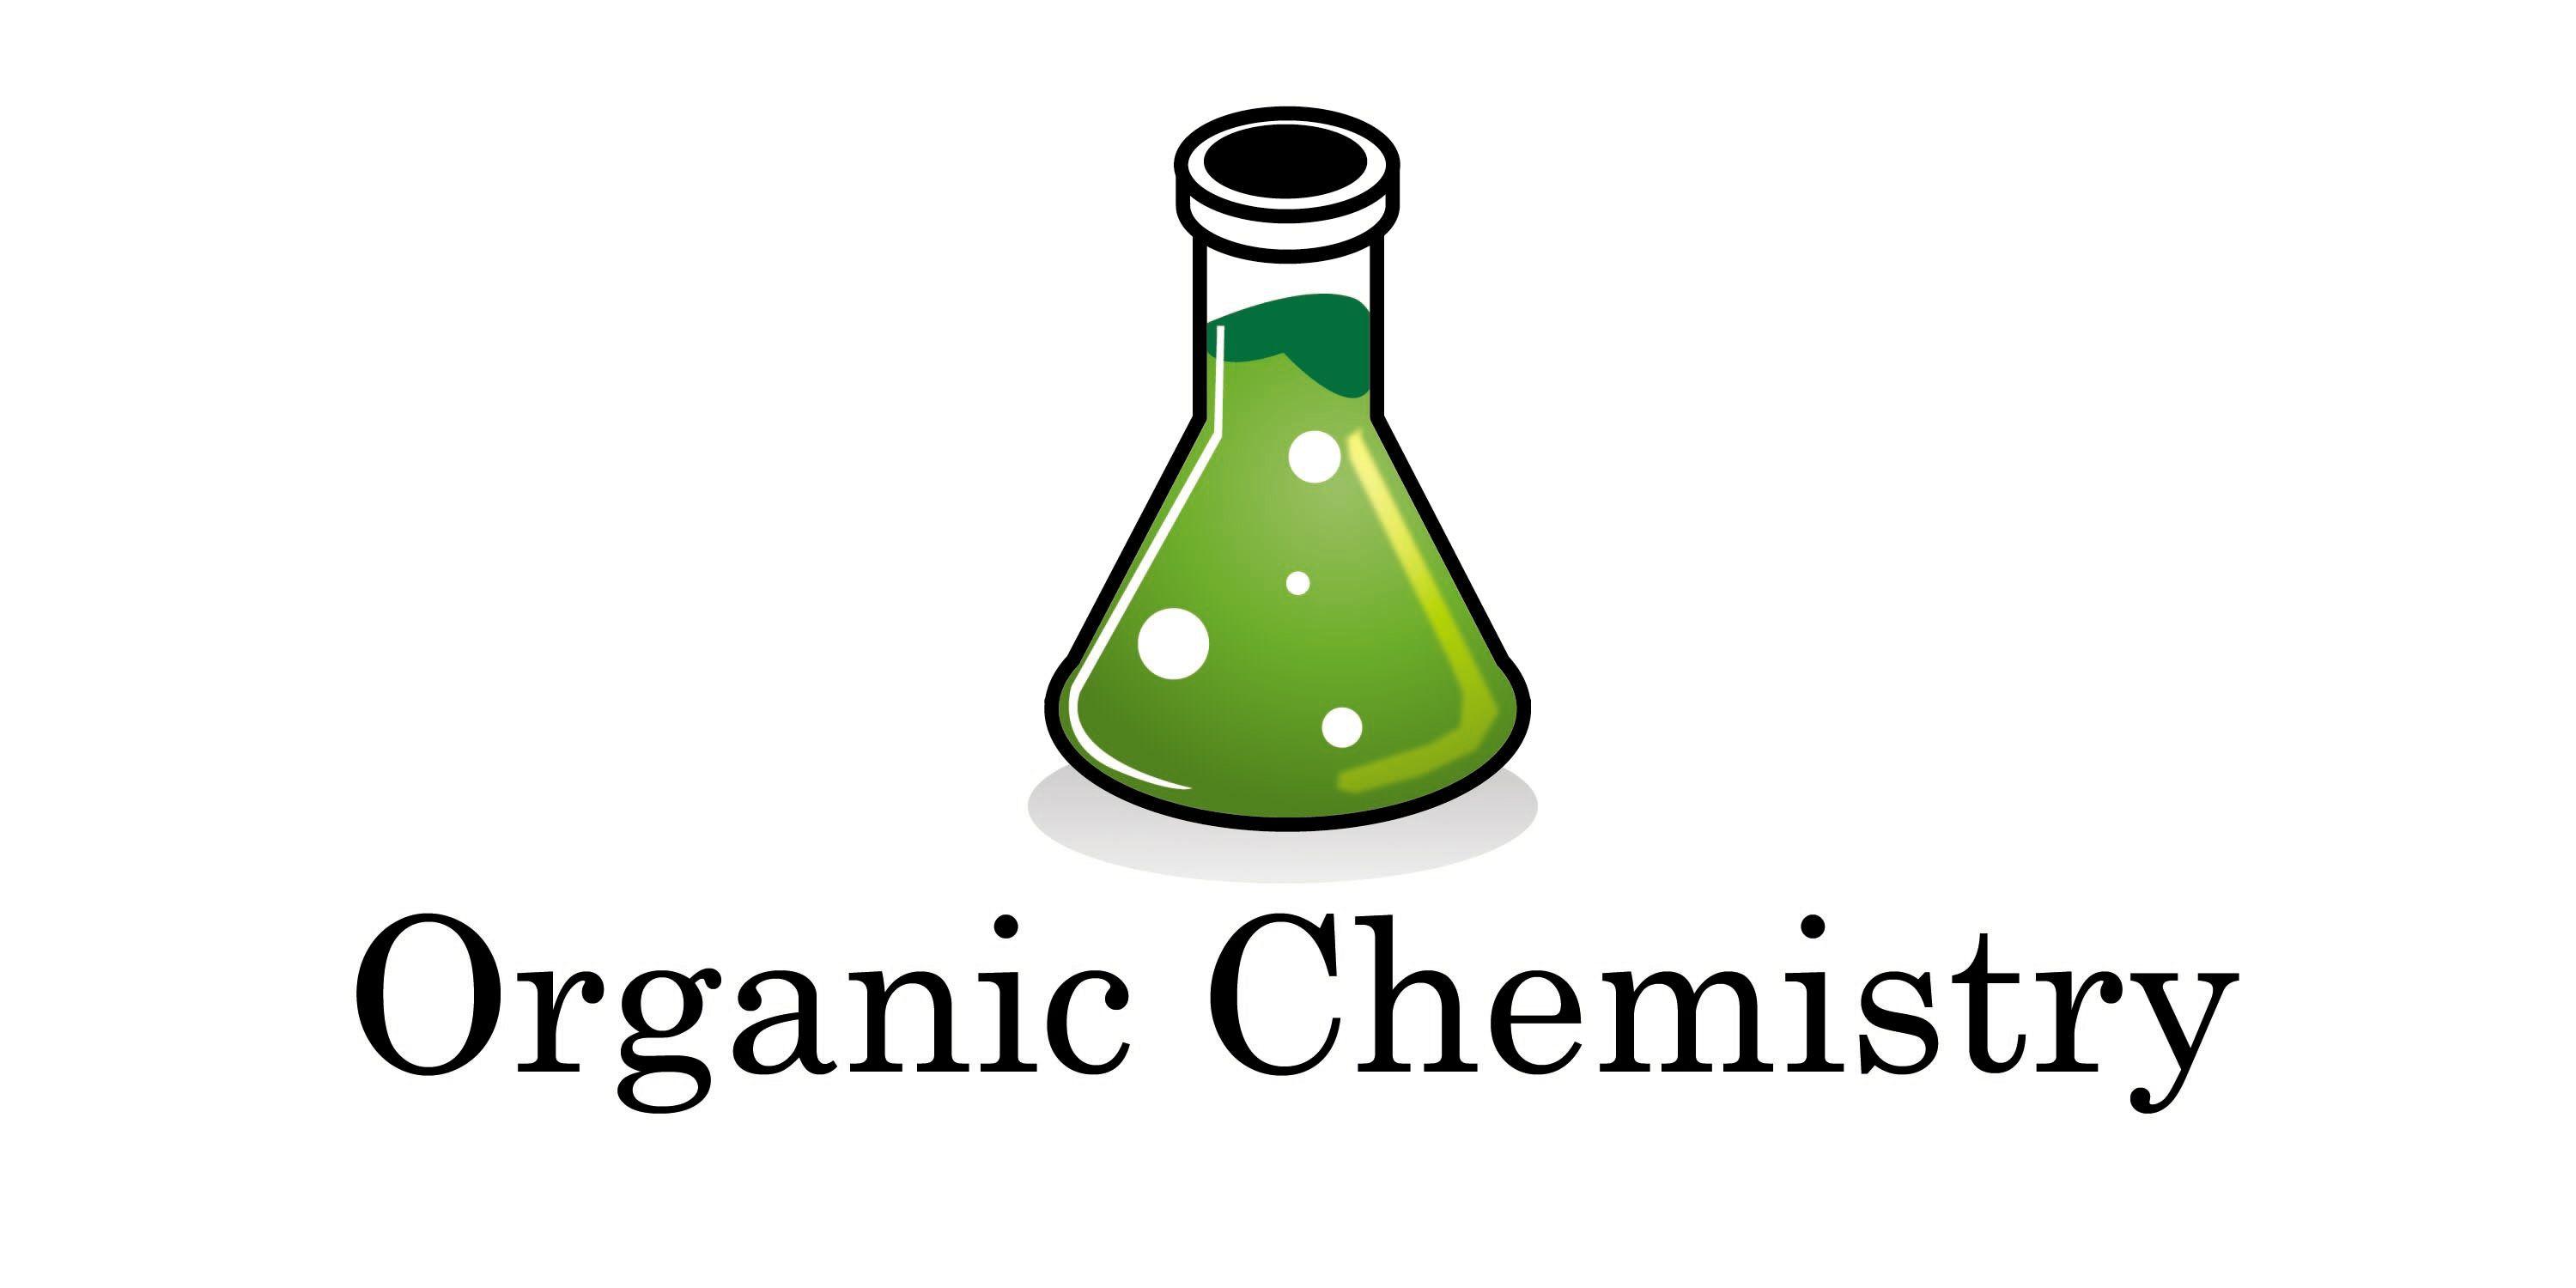 Chemisty Logo - Chemistry Logos